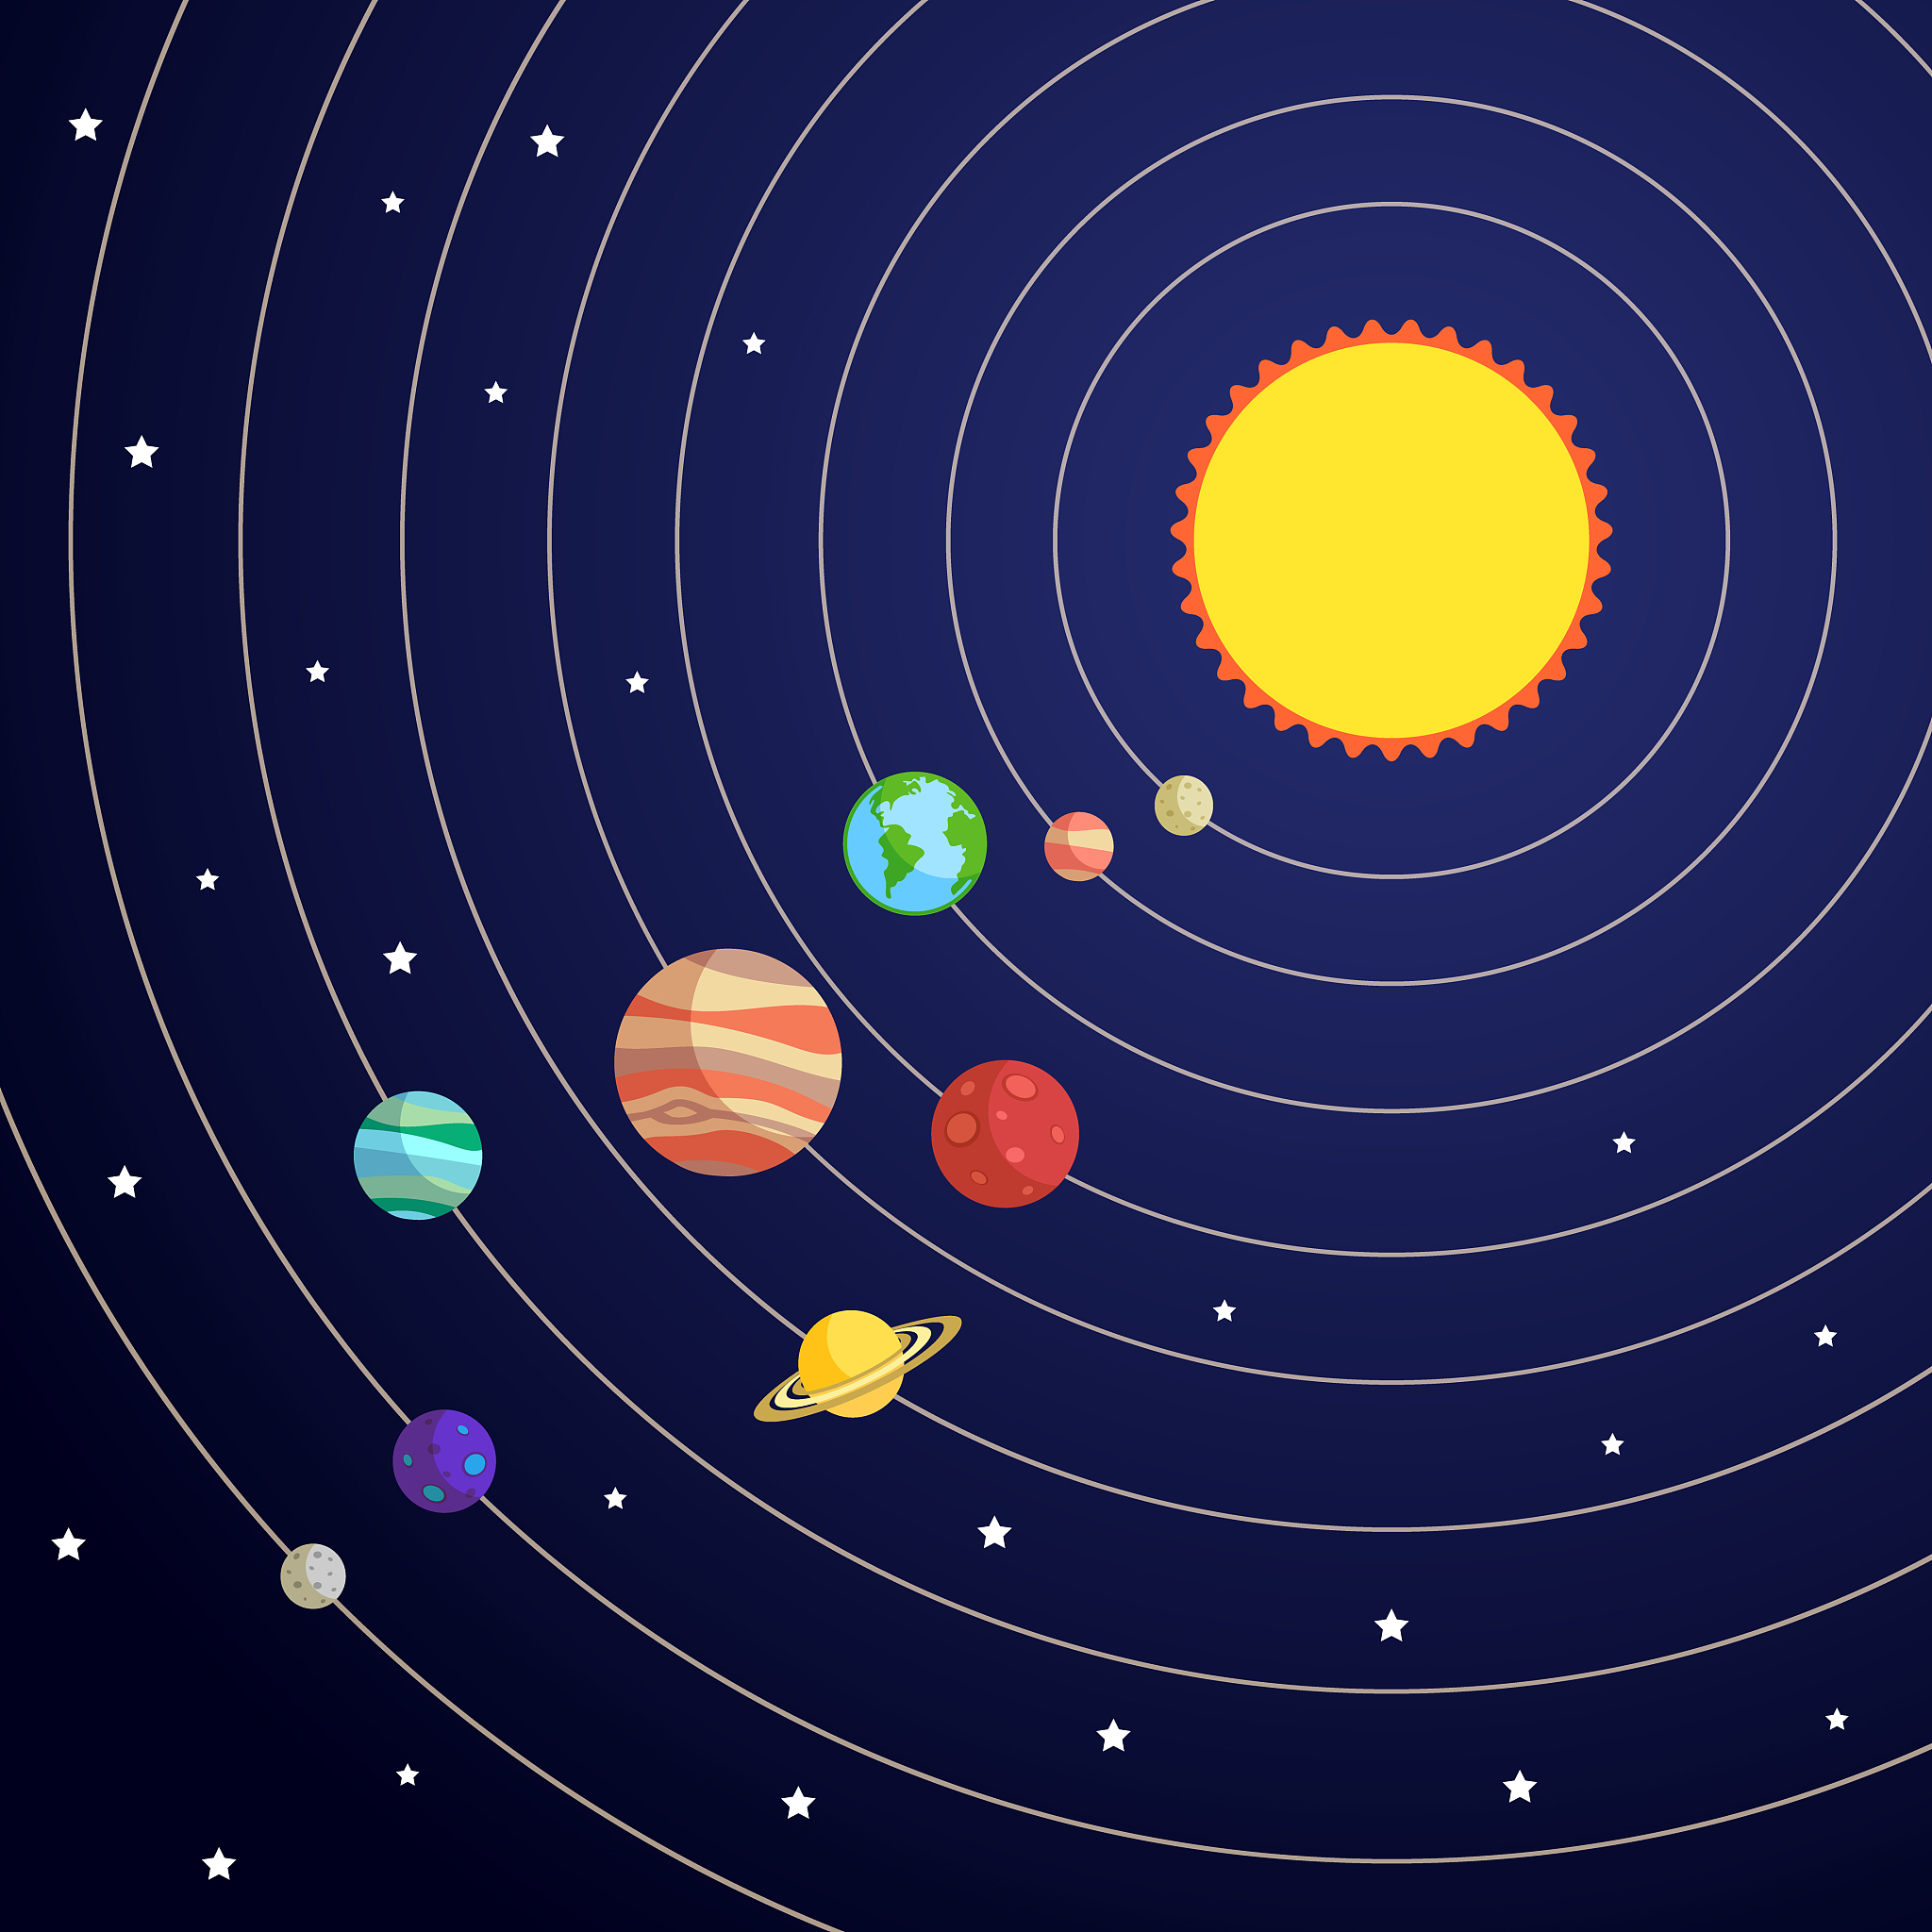 太阳系以外的最大行星是什么样子的?凌星法揭示的巨型行星